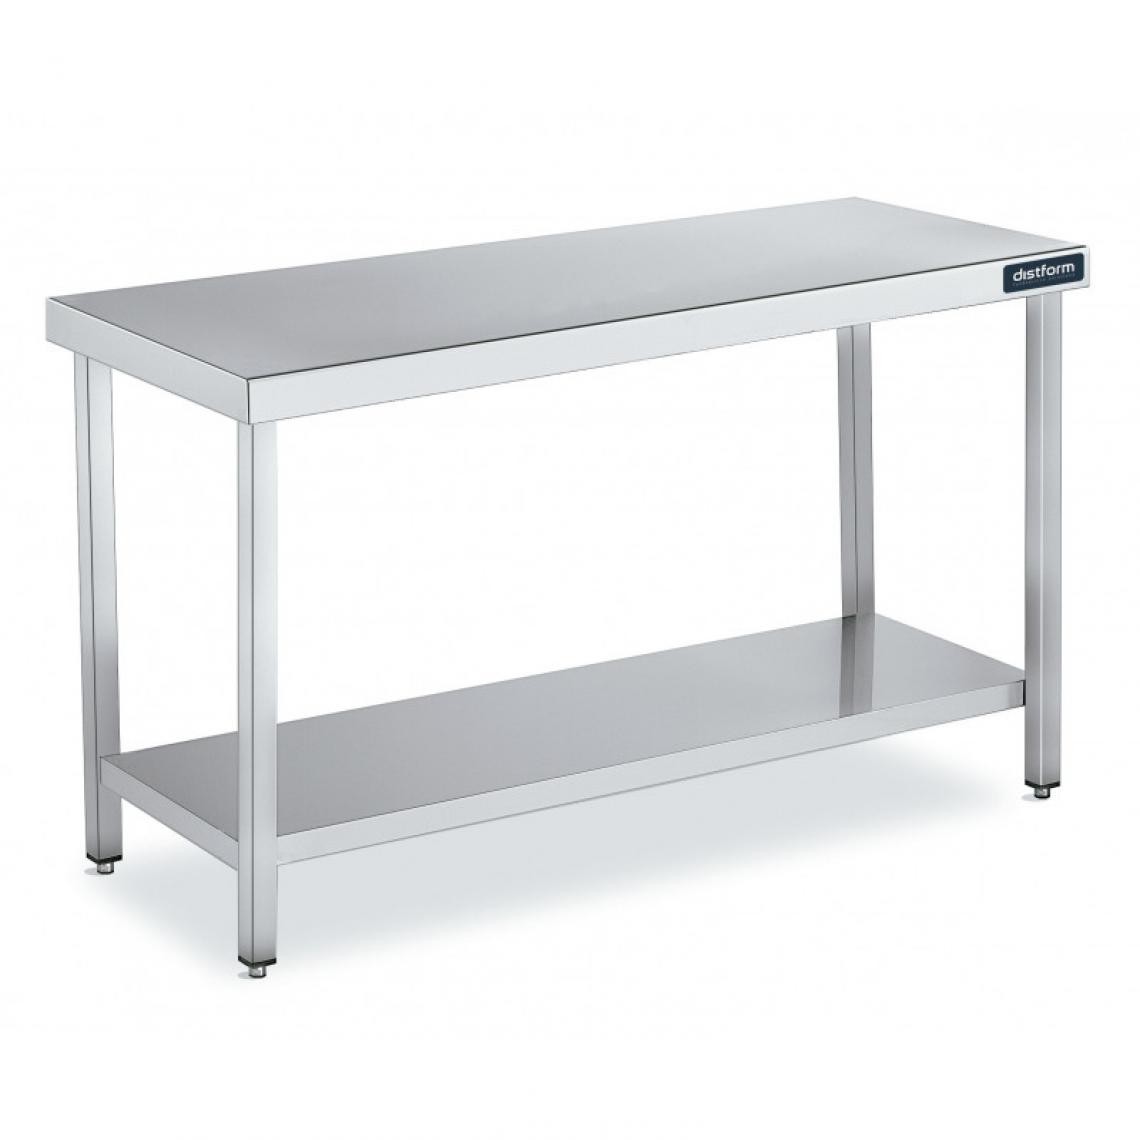 DISTFORM - Table Inox de Travail Gamme 900 avec Etagère - Distform - Acier inoxydable600x900 - Tables à manger